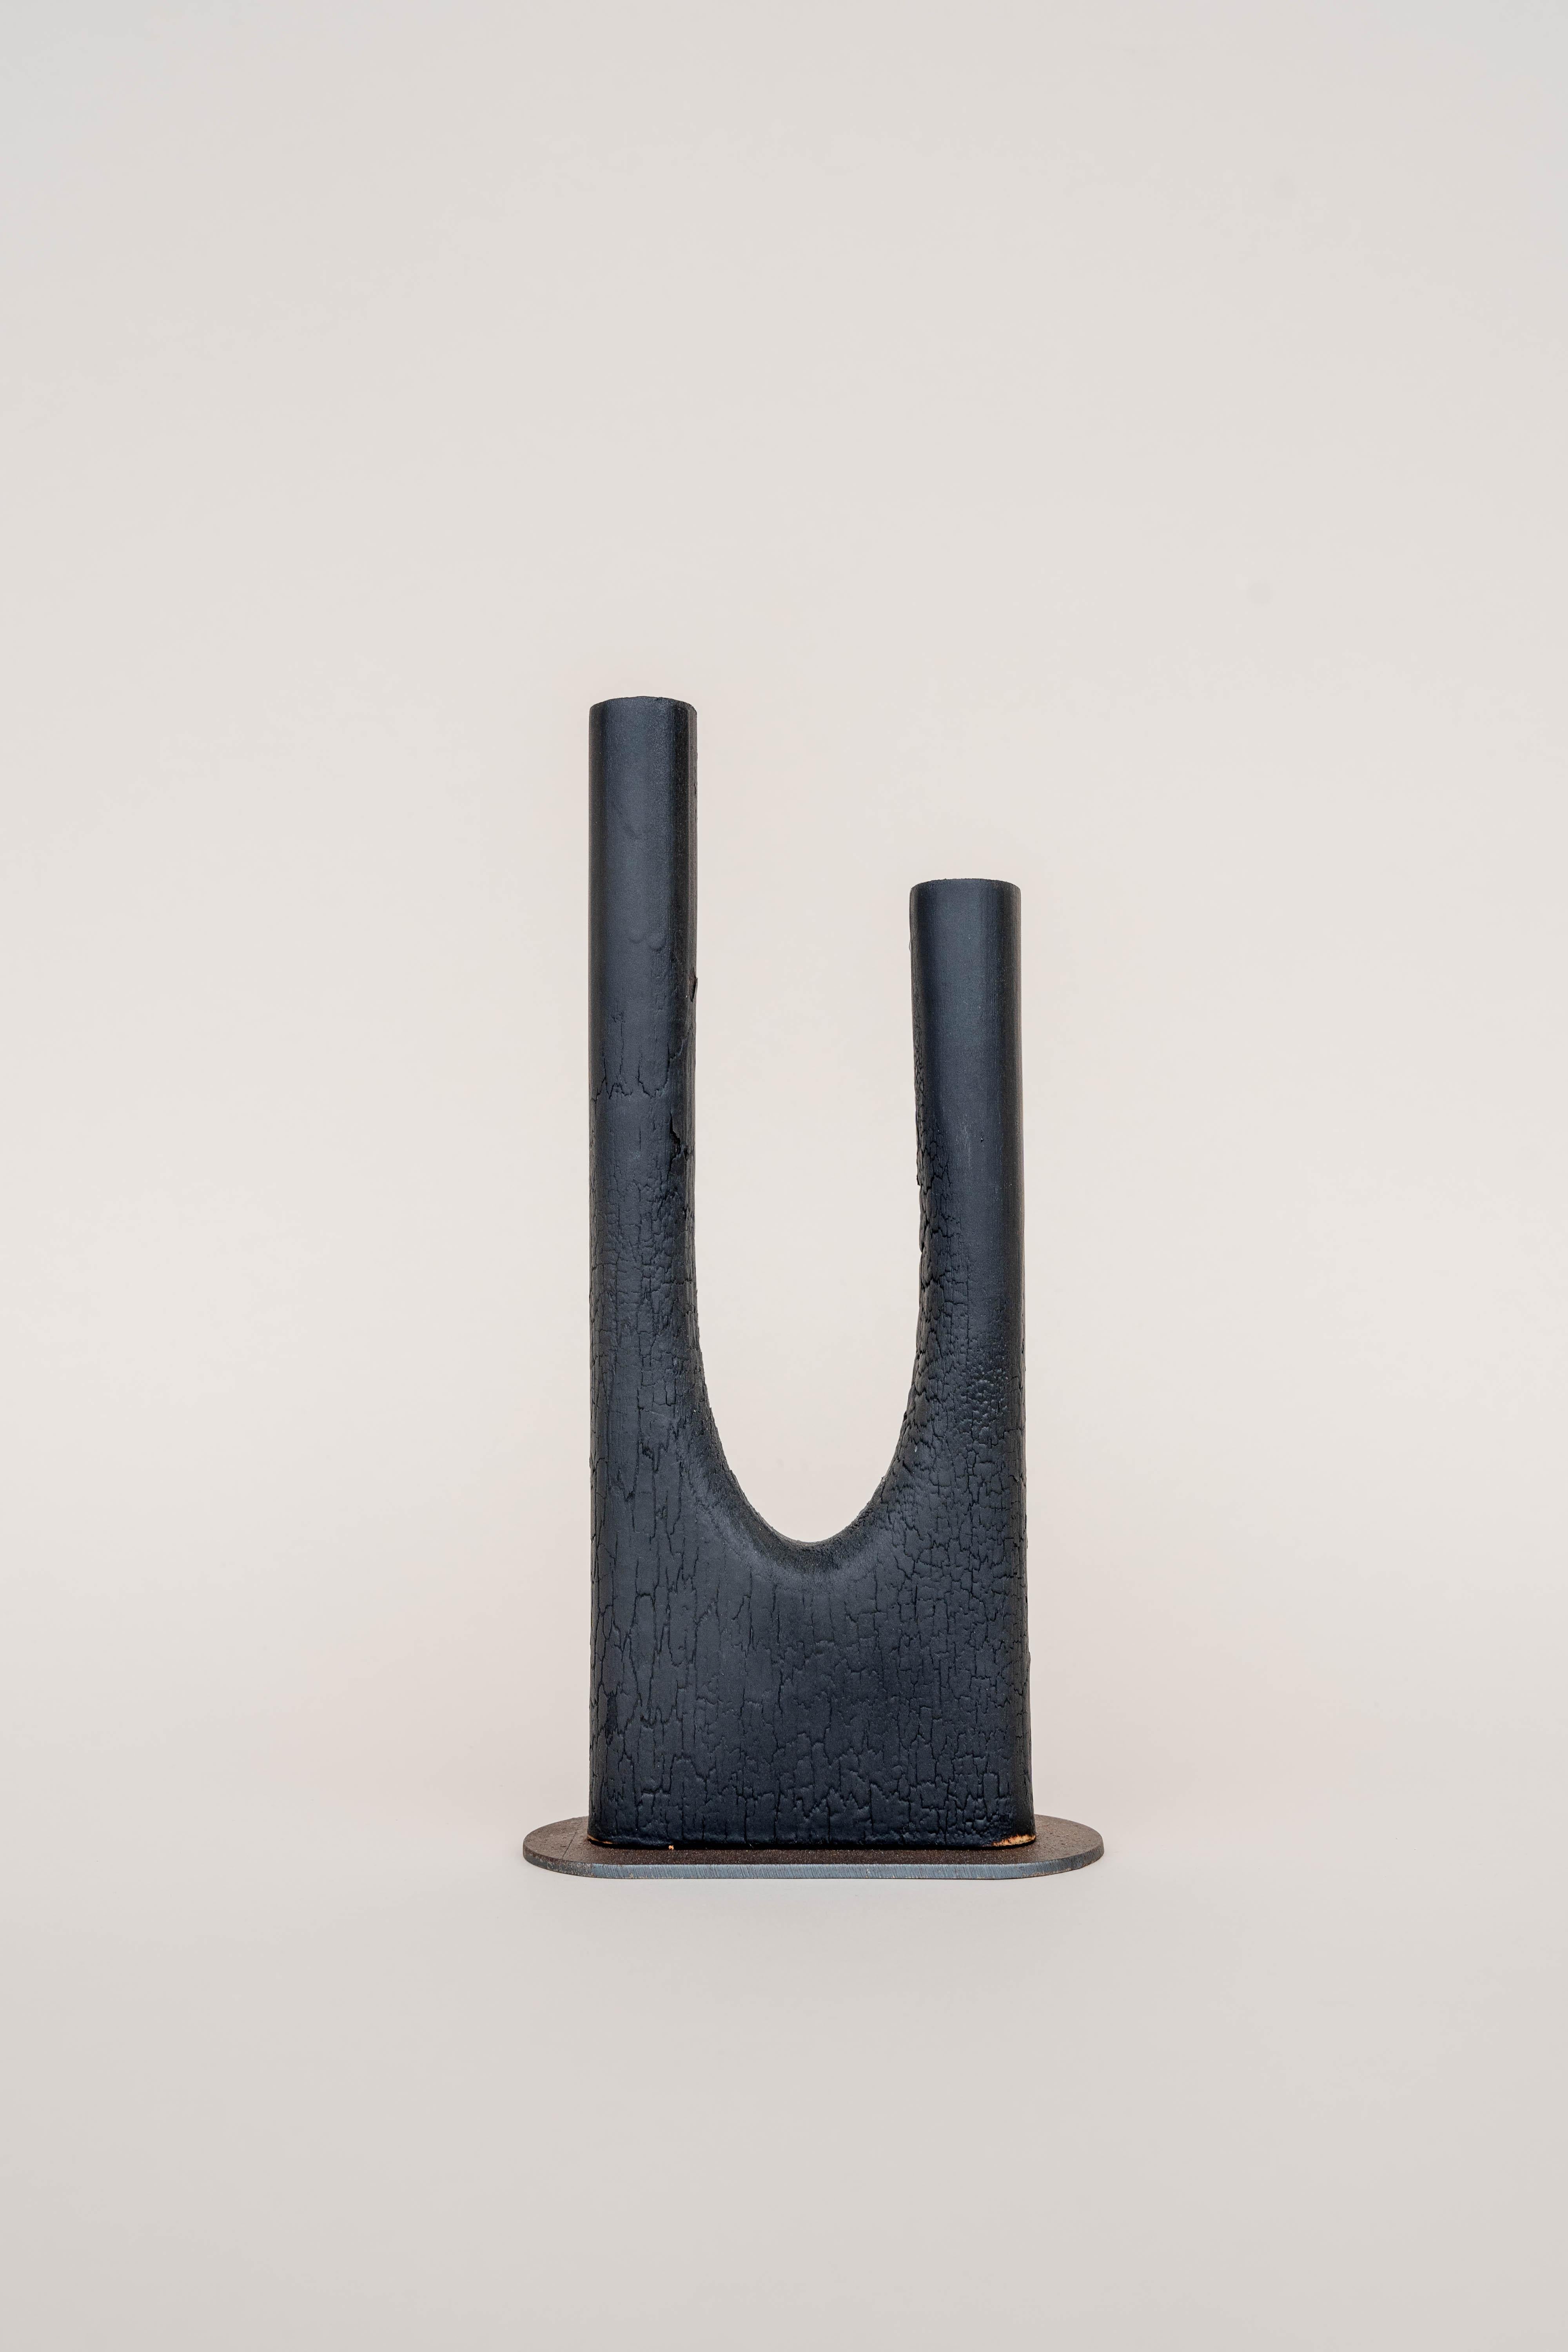 Contemporary Set of Trio Vase, Dou Vase and Uno Vase by Daniel Elkayam